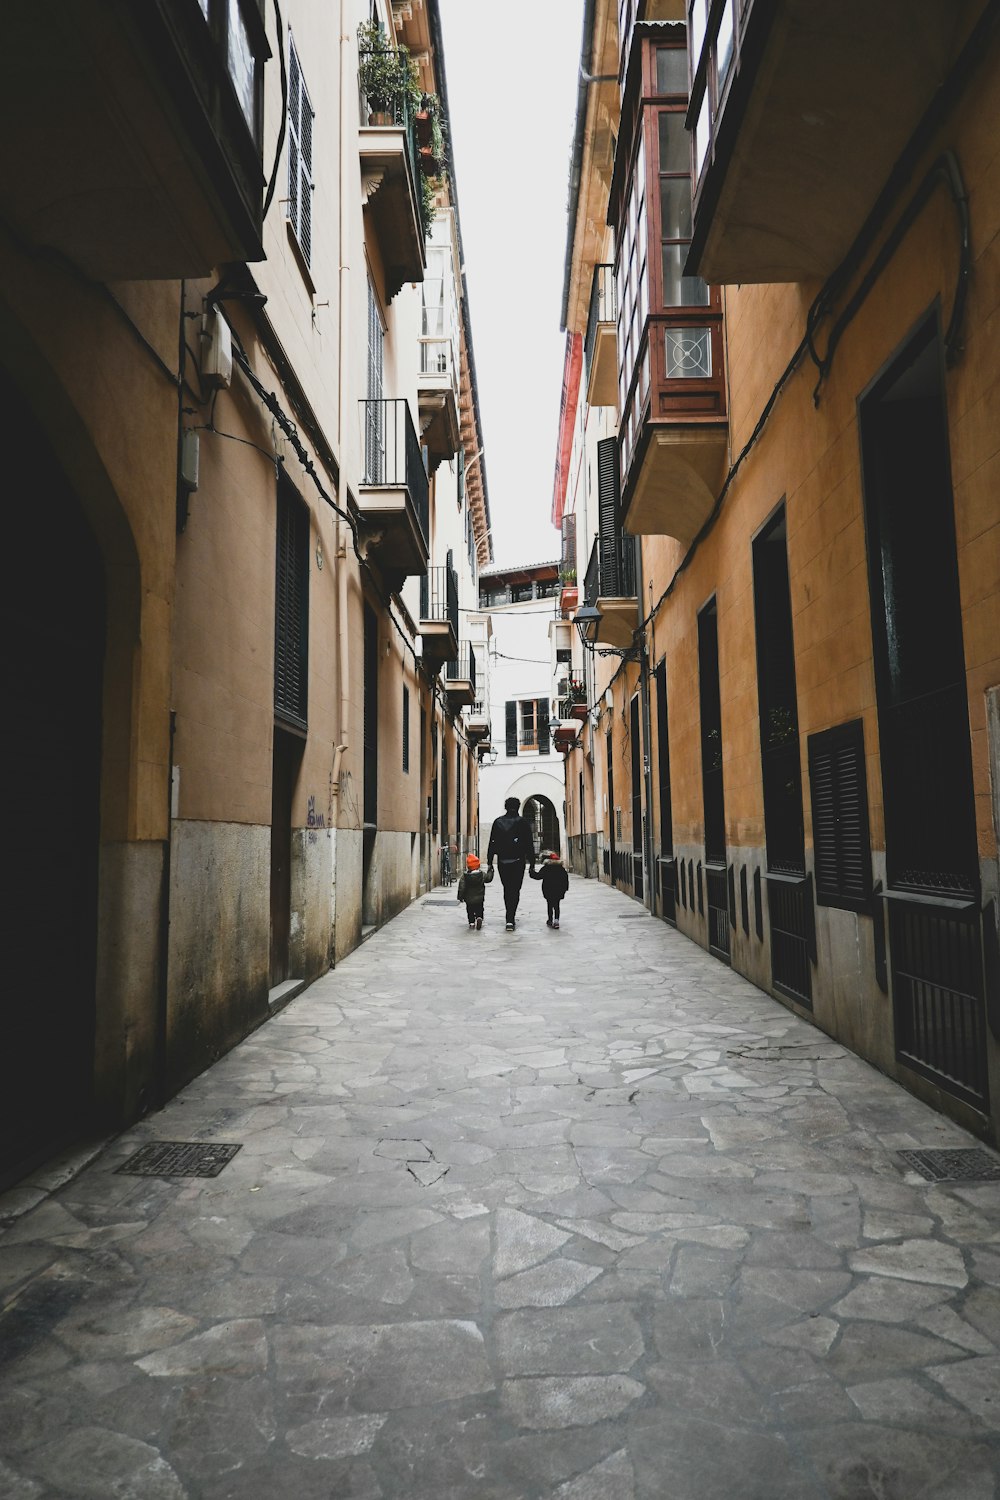 une personne marchant dans une rue étroite